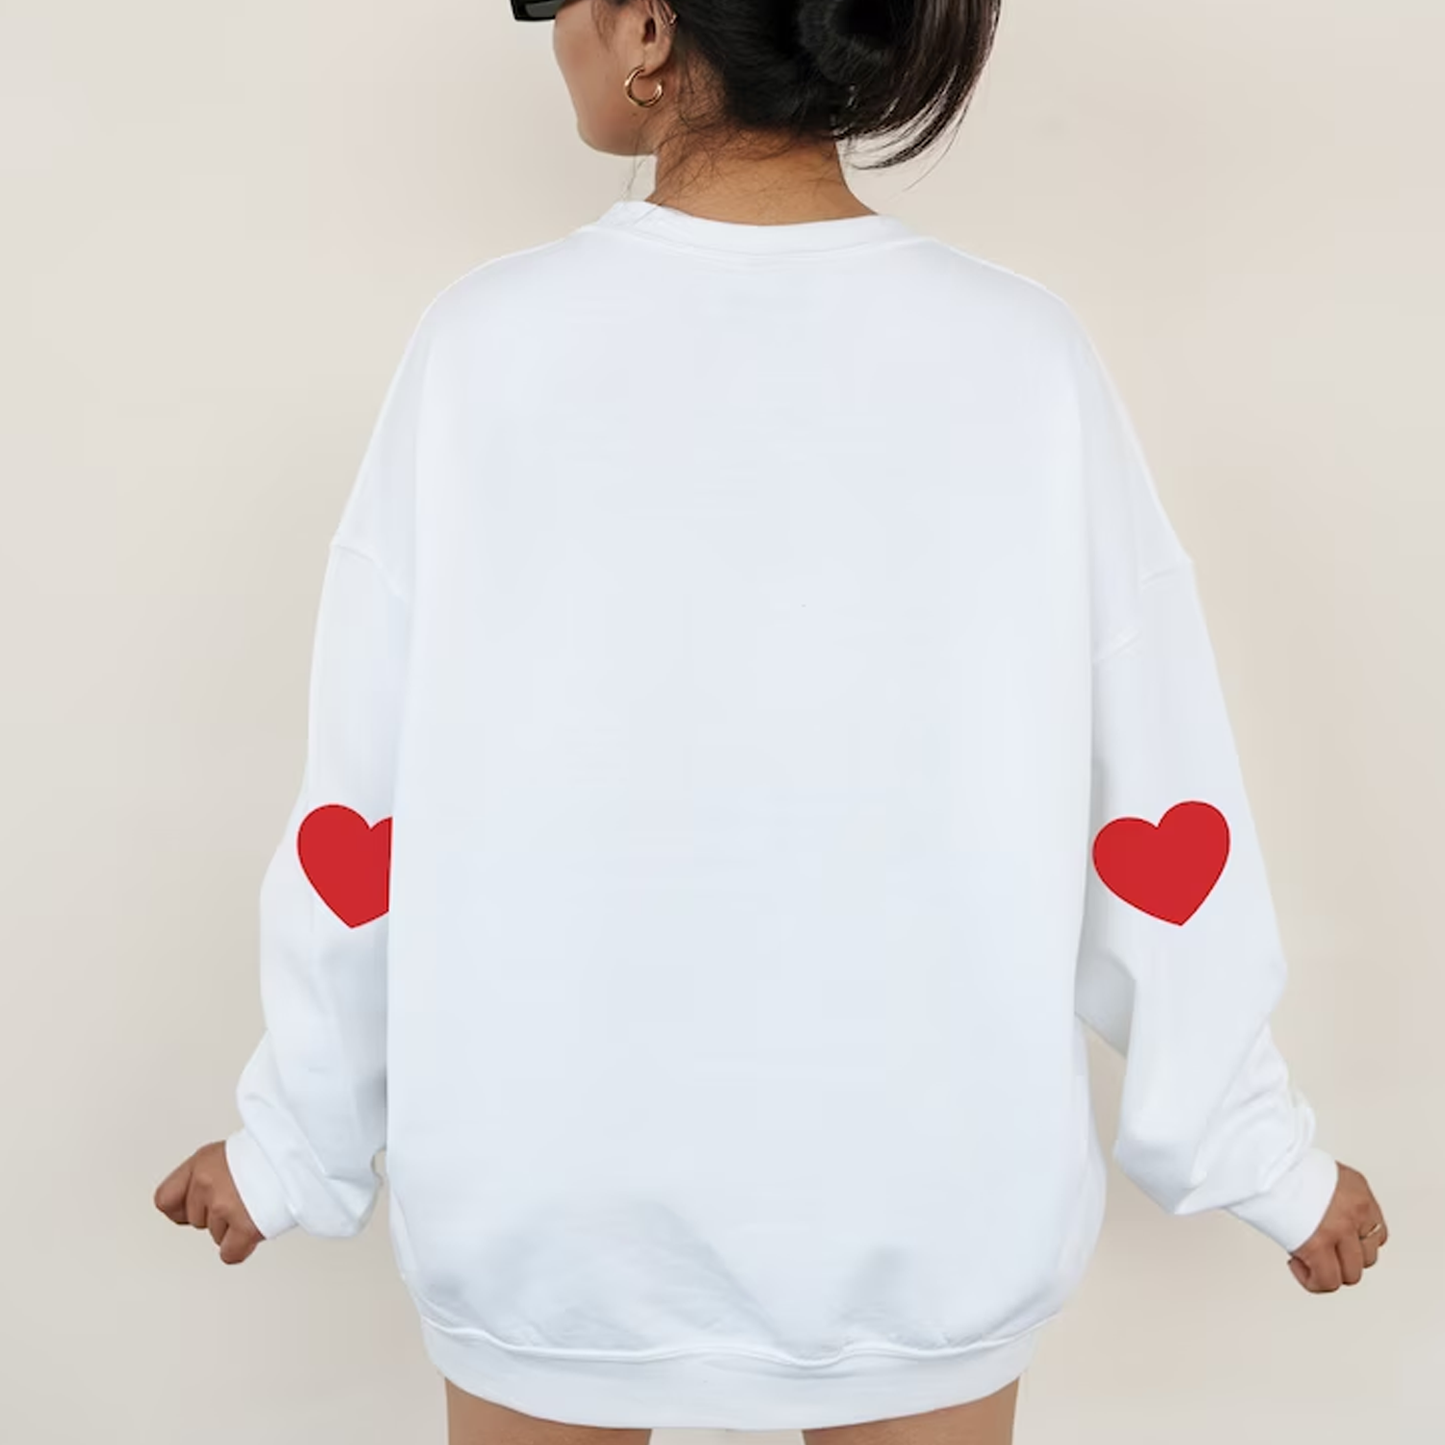 Personalised Neck Name - Heart Sleeves Sweatshirt / Jumper